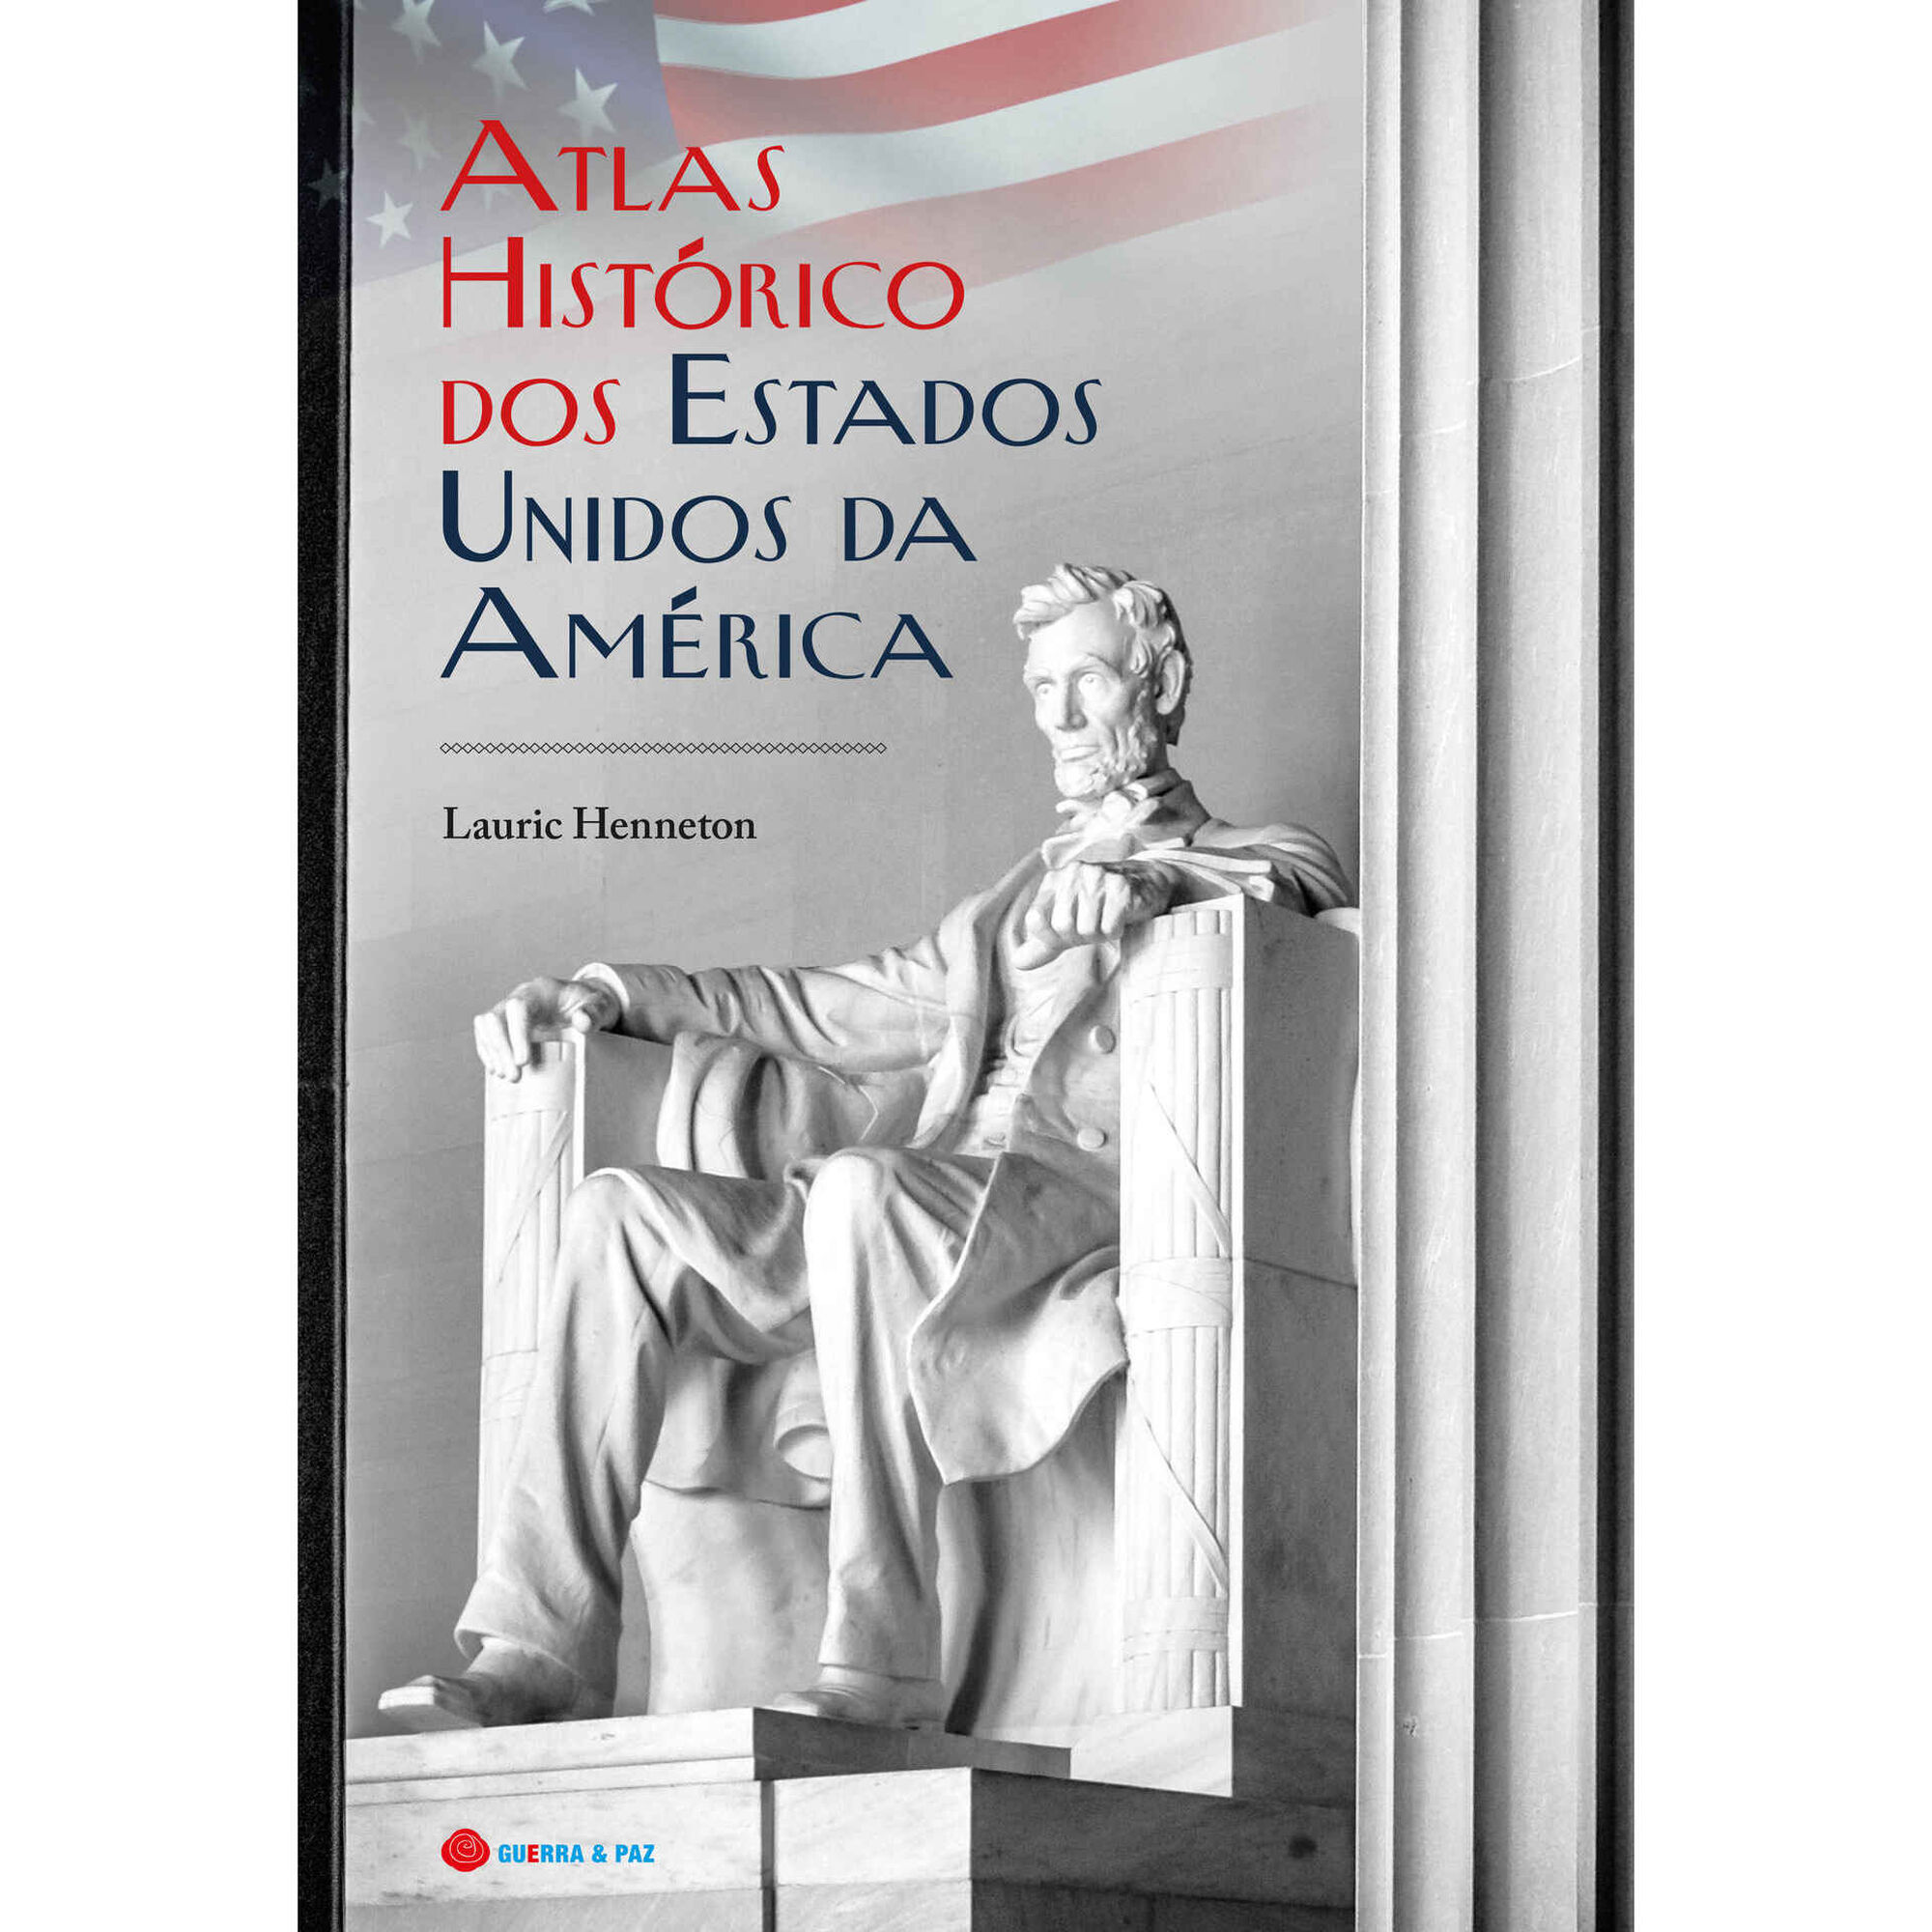 Atlas Histórico dos Estados Unidos da América